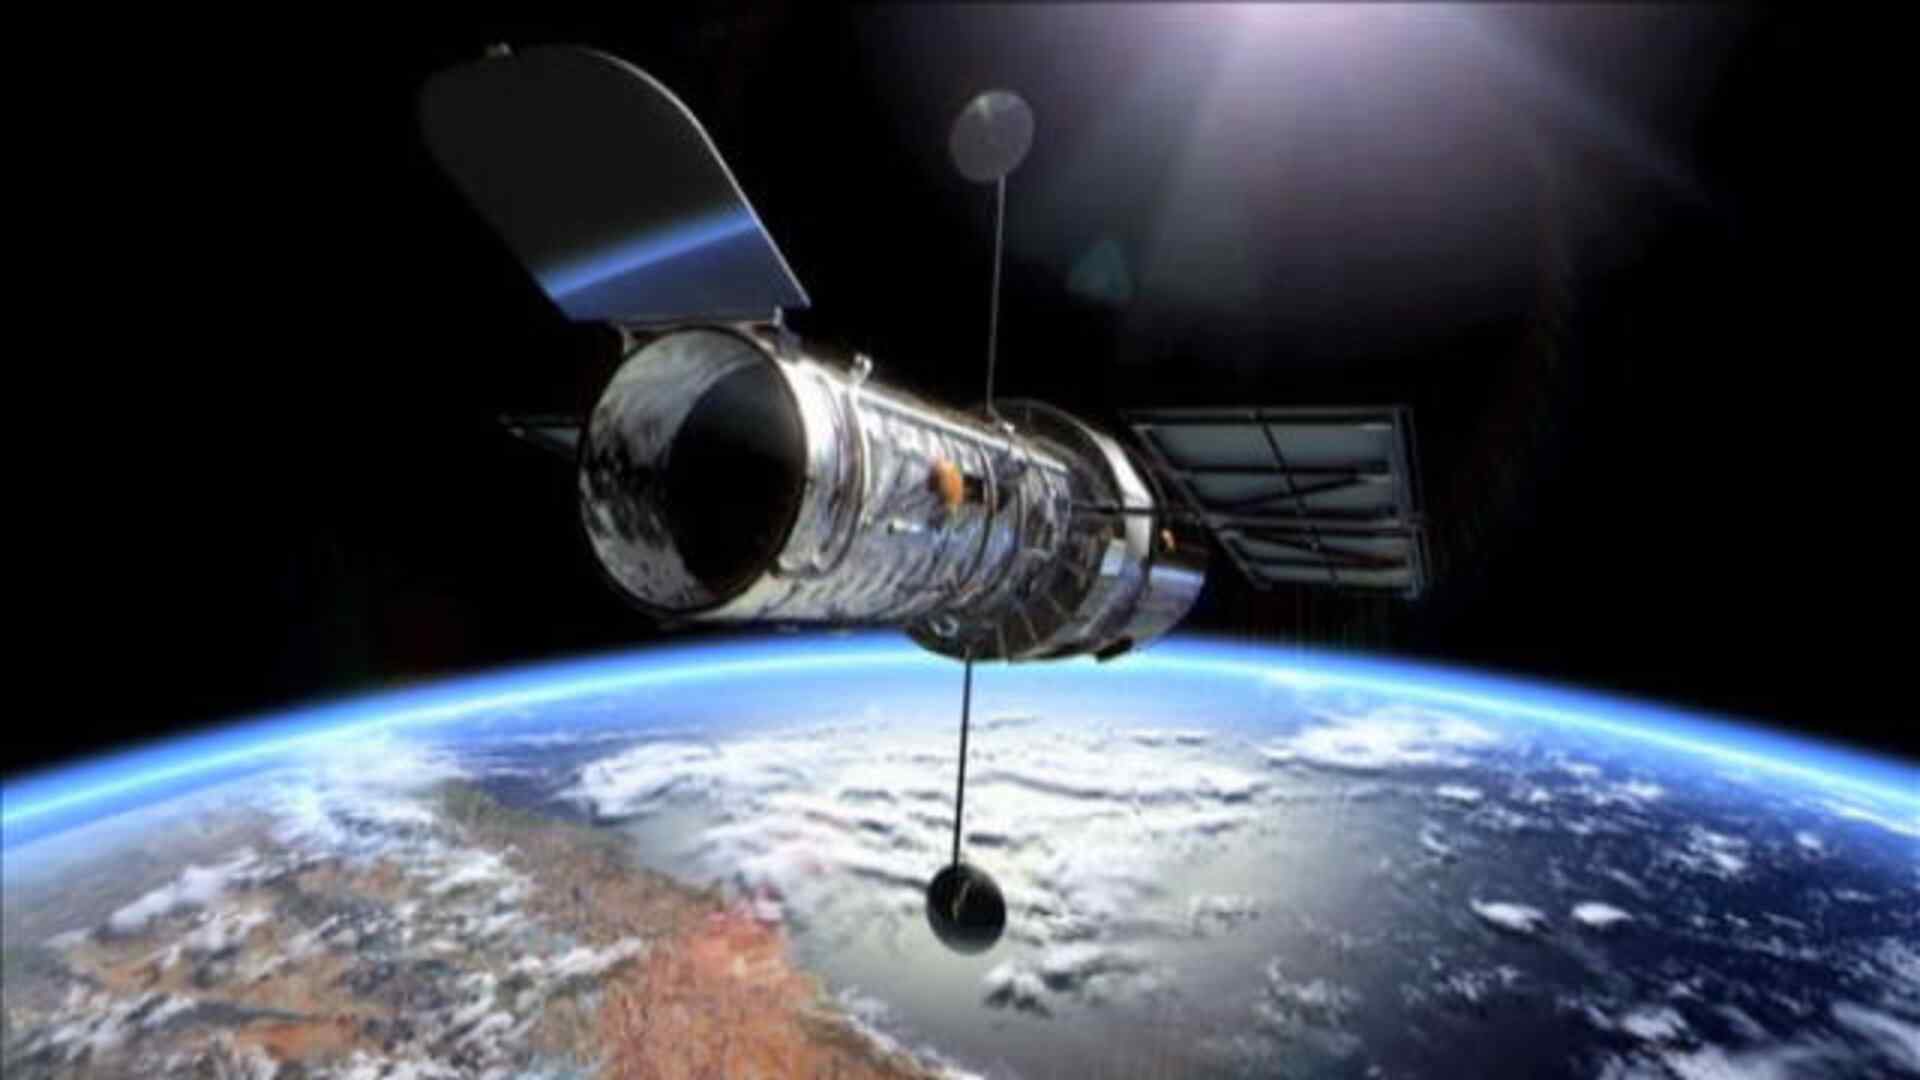  30 vjet të teleskopit hapësinor “Hubble”